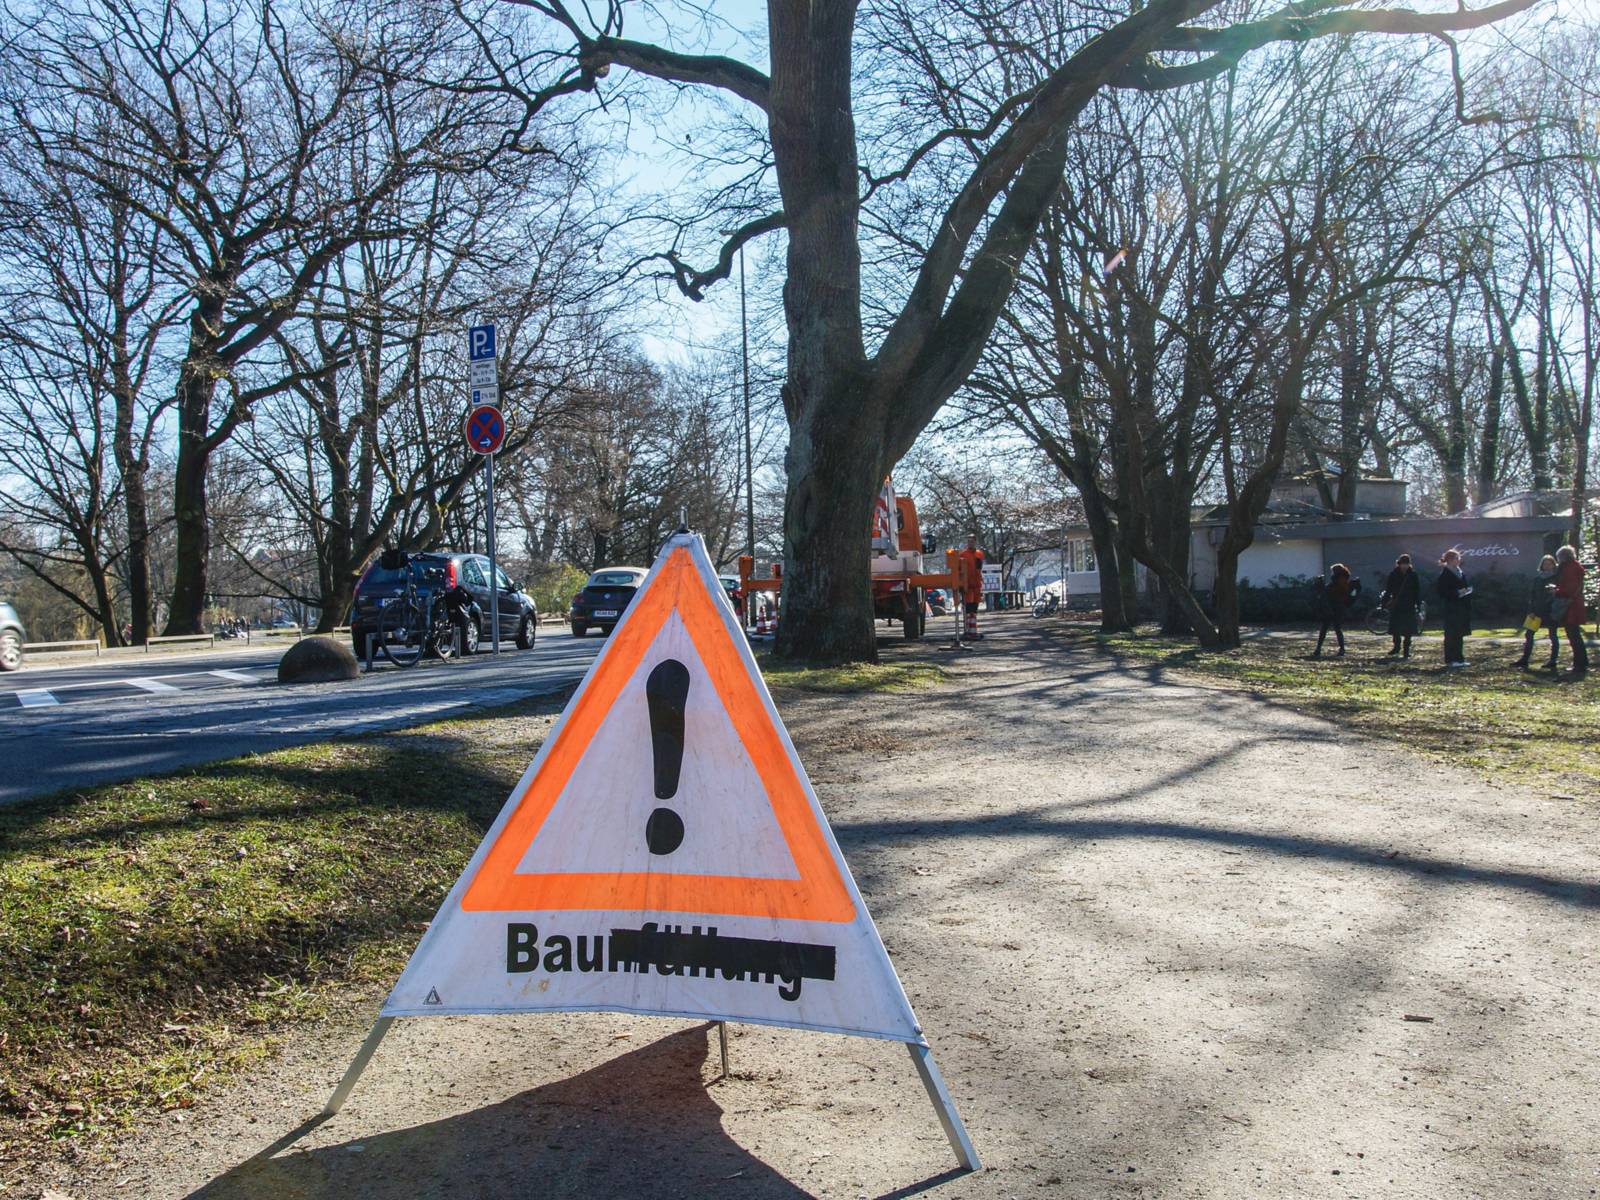 Schild mit der Aufschrift "Baumfällung" auf einem Weg.